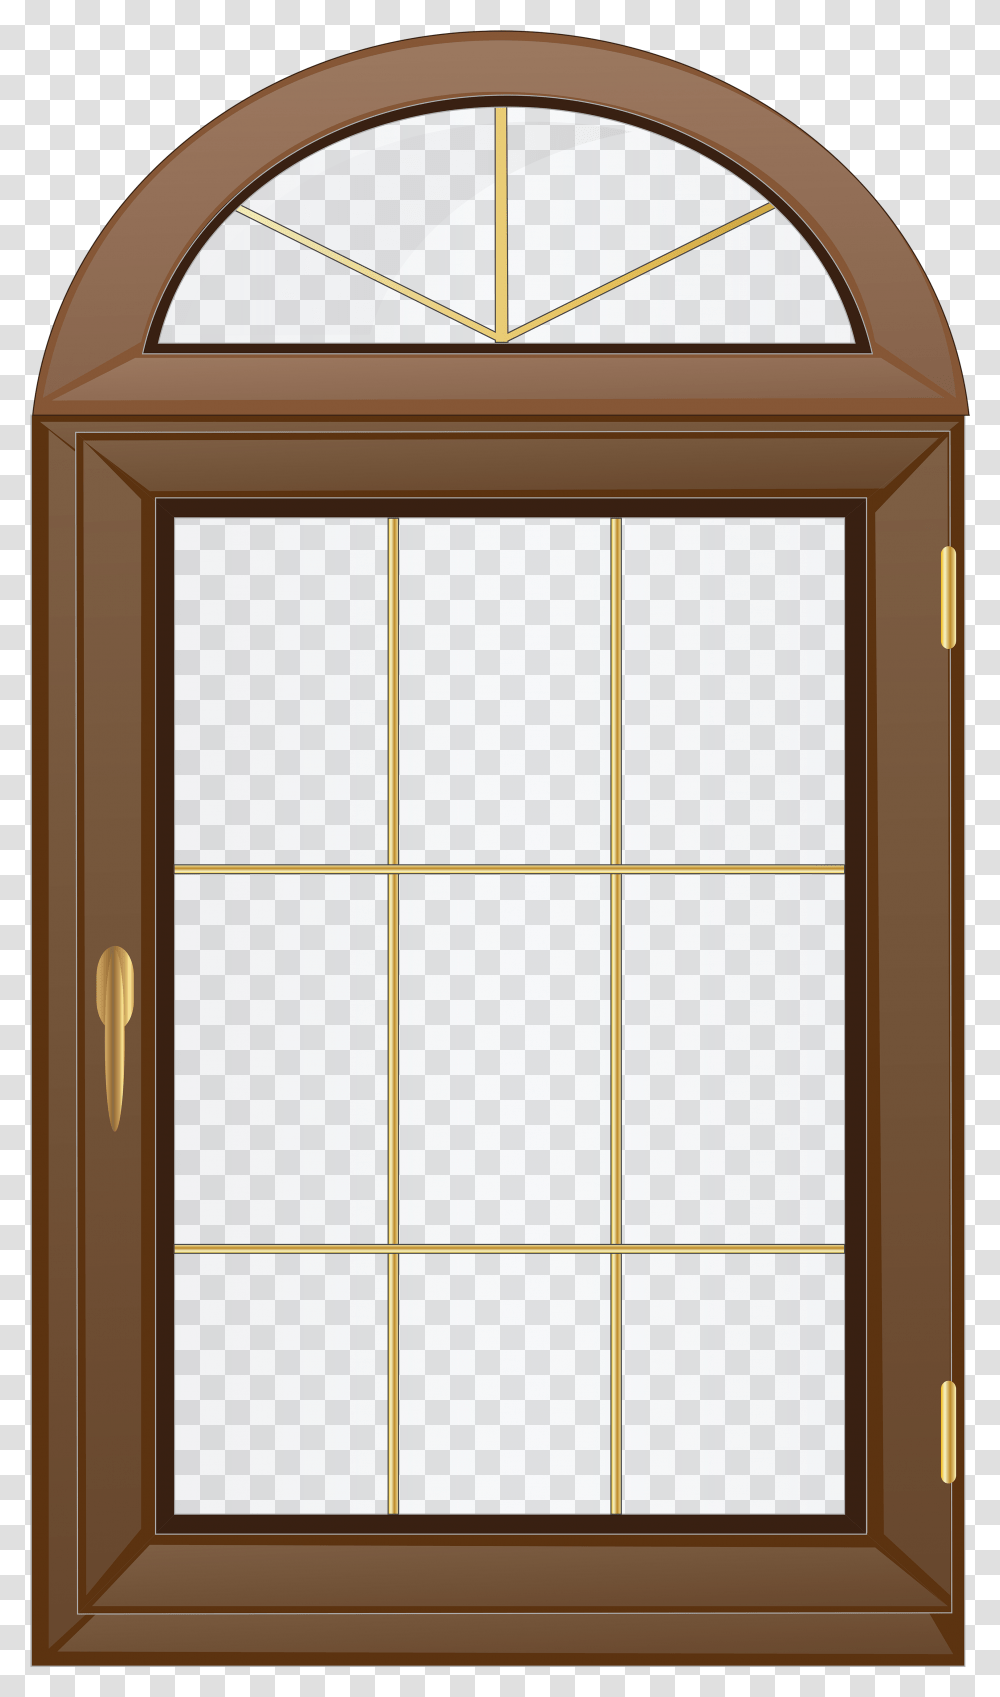 Window Free Content Clip Art Background Window Clipart, Picture Window, Door, French Door Transparent Png